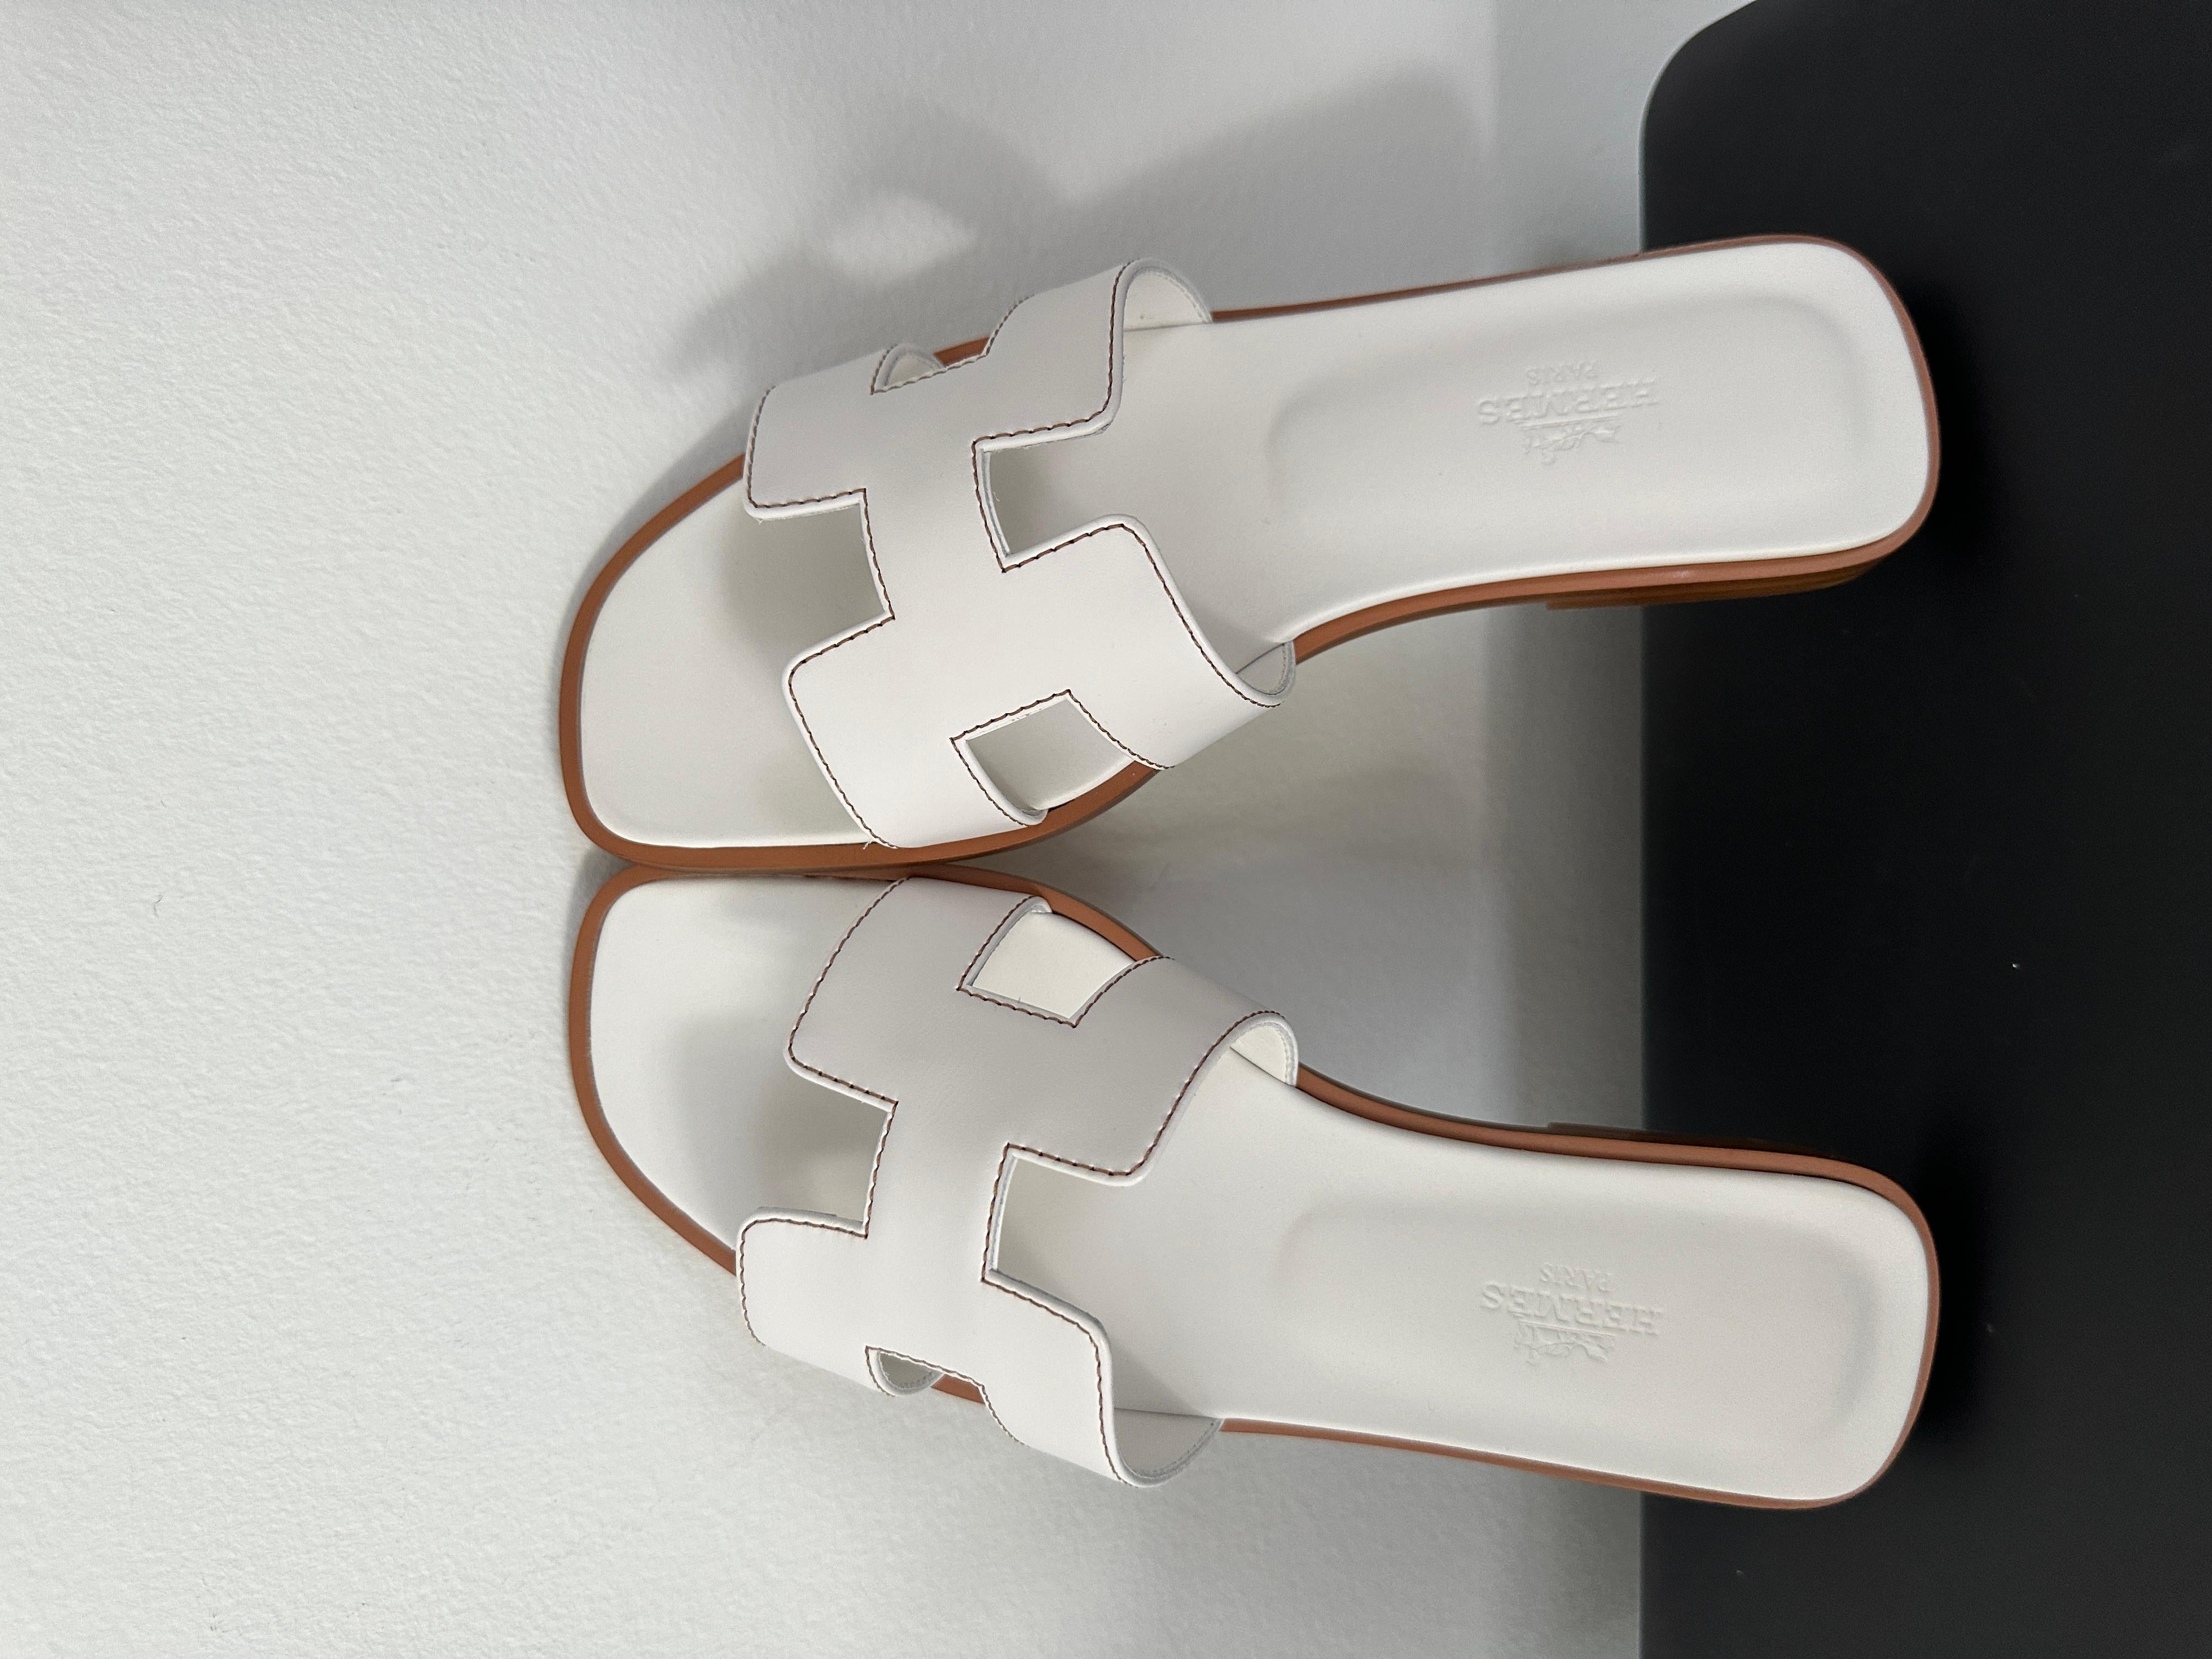 Le site  Sandale Oran 
A propos de la sandale Oran :
Hermes Oran est un modèle de sandale produit par la marque de mode de luxe Hermes. Cette sandale présente un design simple et minimaliste, avec une semelle en cuir.  et une semelle plate. L'Oran